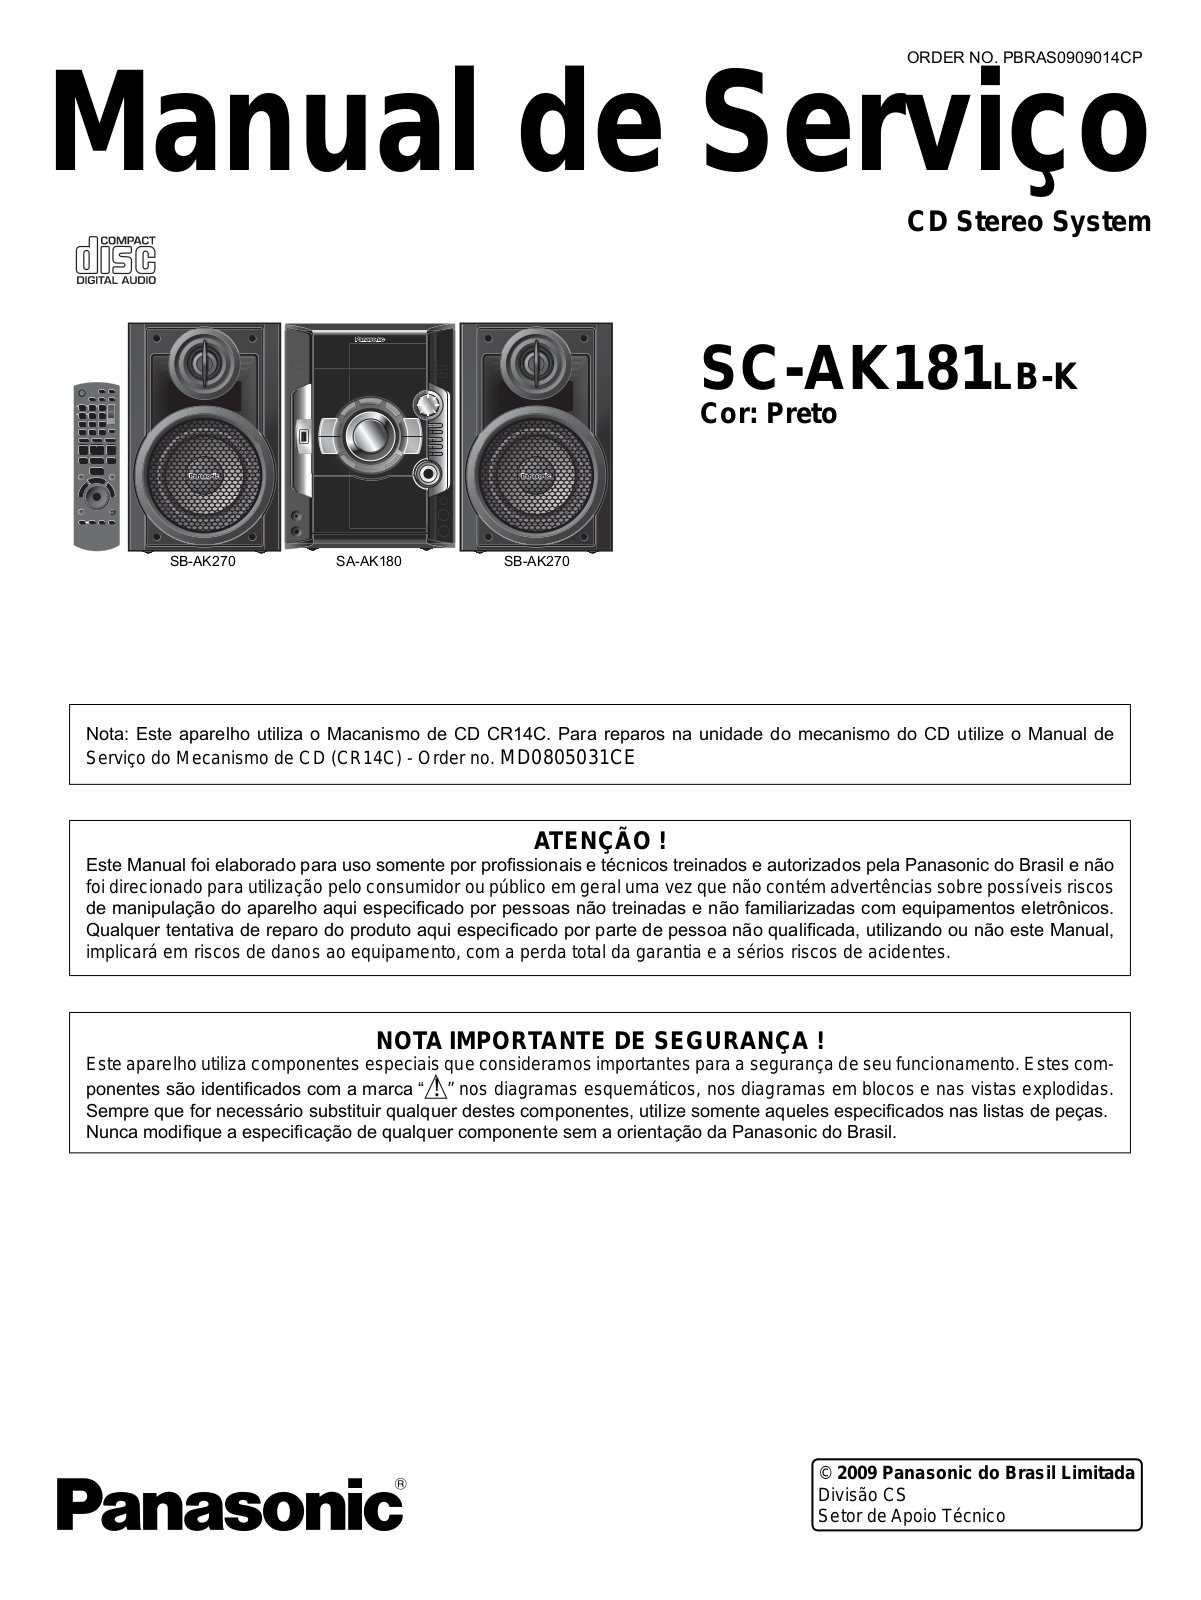 Panasonic SC-AK181 LB-K Schematic